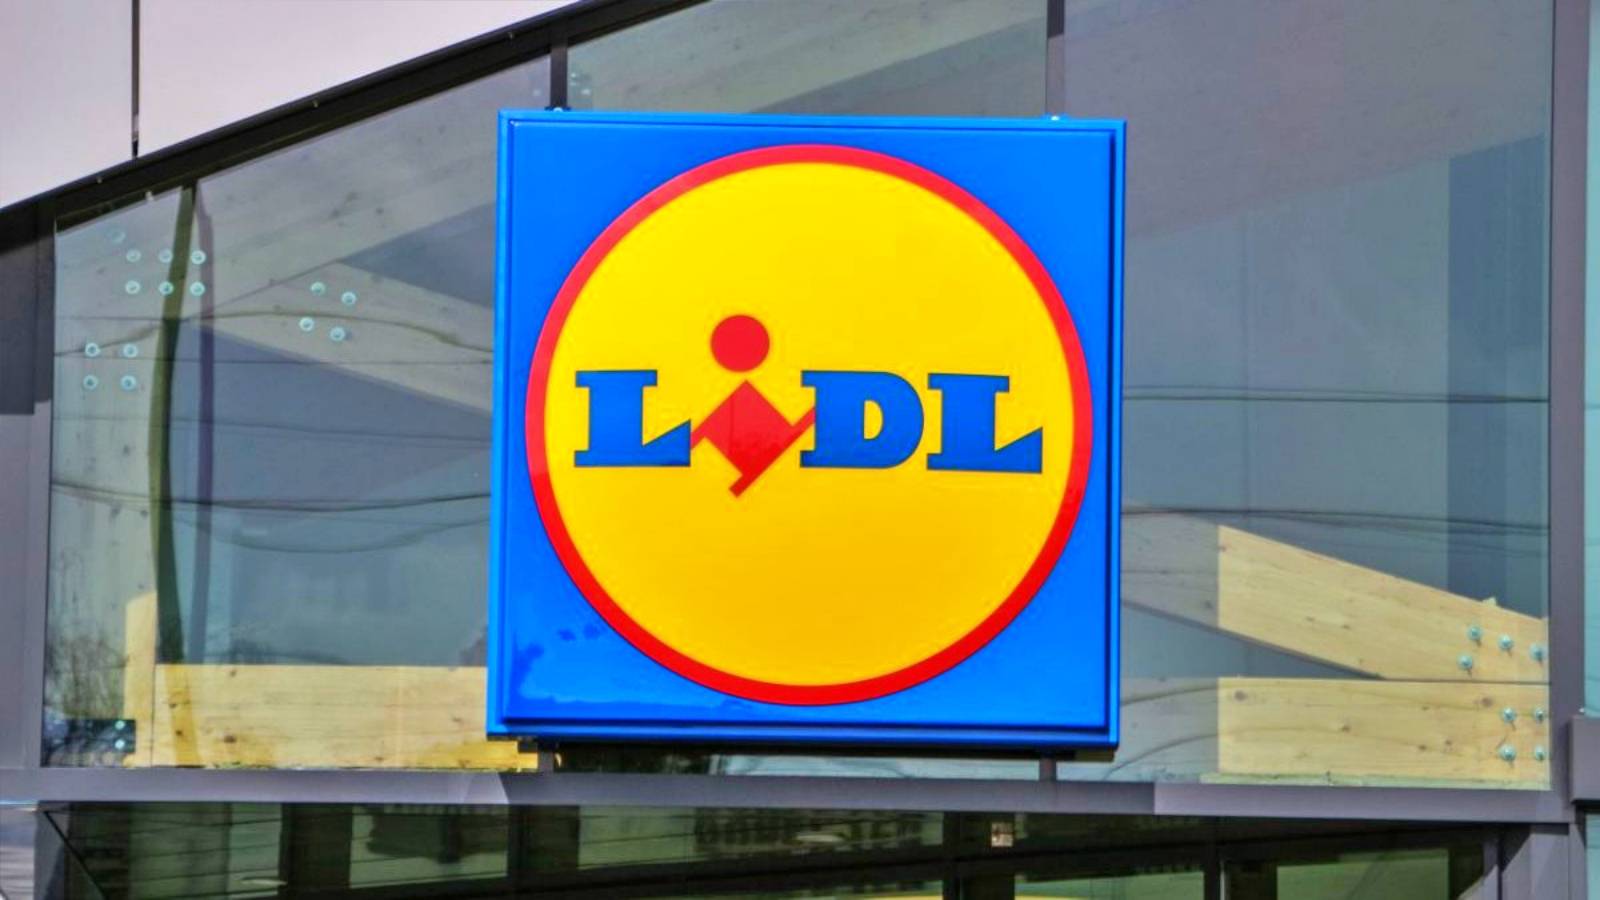 LIDL Roumanie Tous les clients roumains informés des changements dans les nouveaux magasins